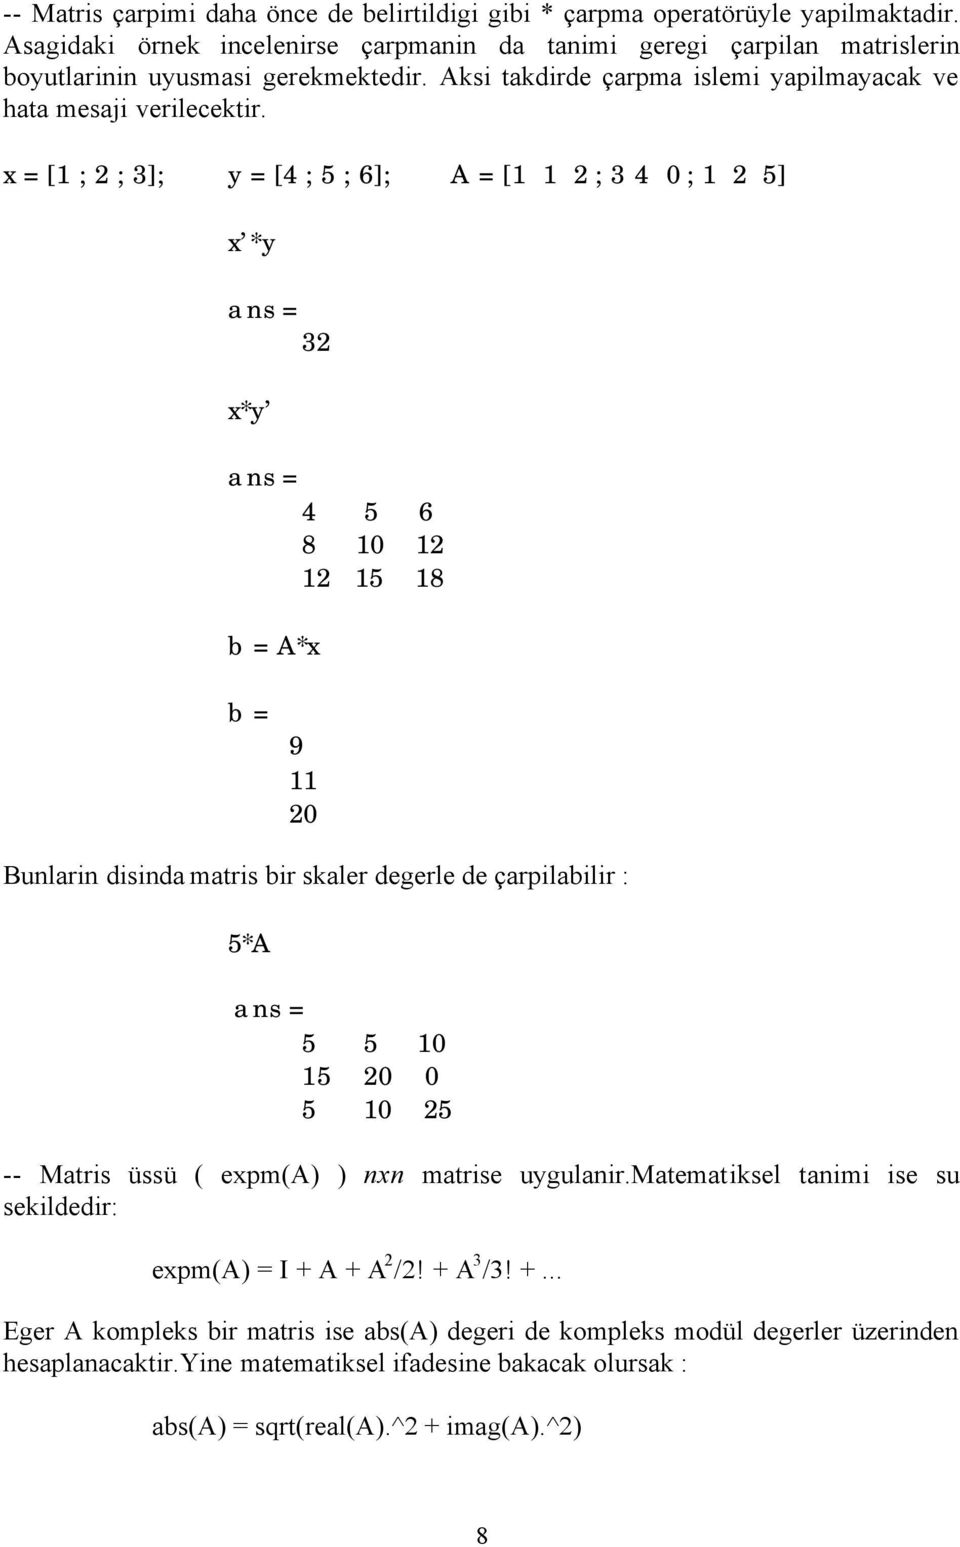 x = [1 ; 2 ; 3]; y = [4 ; 5 ; 6]; A = [1 1 2 ; 3 4 0 ; 1 2 5] x *y 32 x*y 4 5 6 8 10 12 12 15 18 b = A*x b = 9 11 20 Bunlarin disinda matris bir skaler degerle de çarpilabilir : 5*A 5 5 10 15 20 0